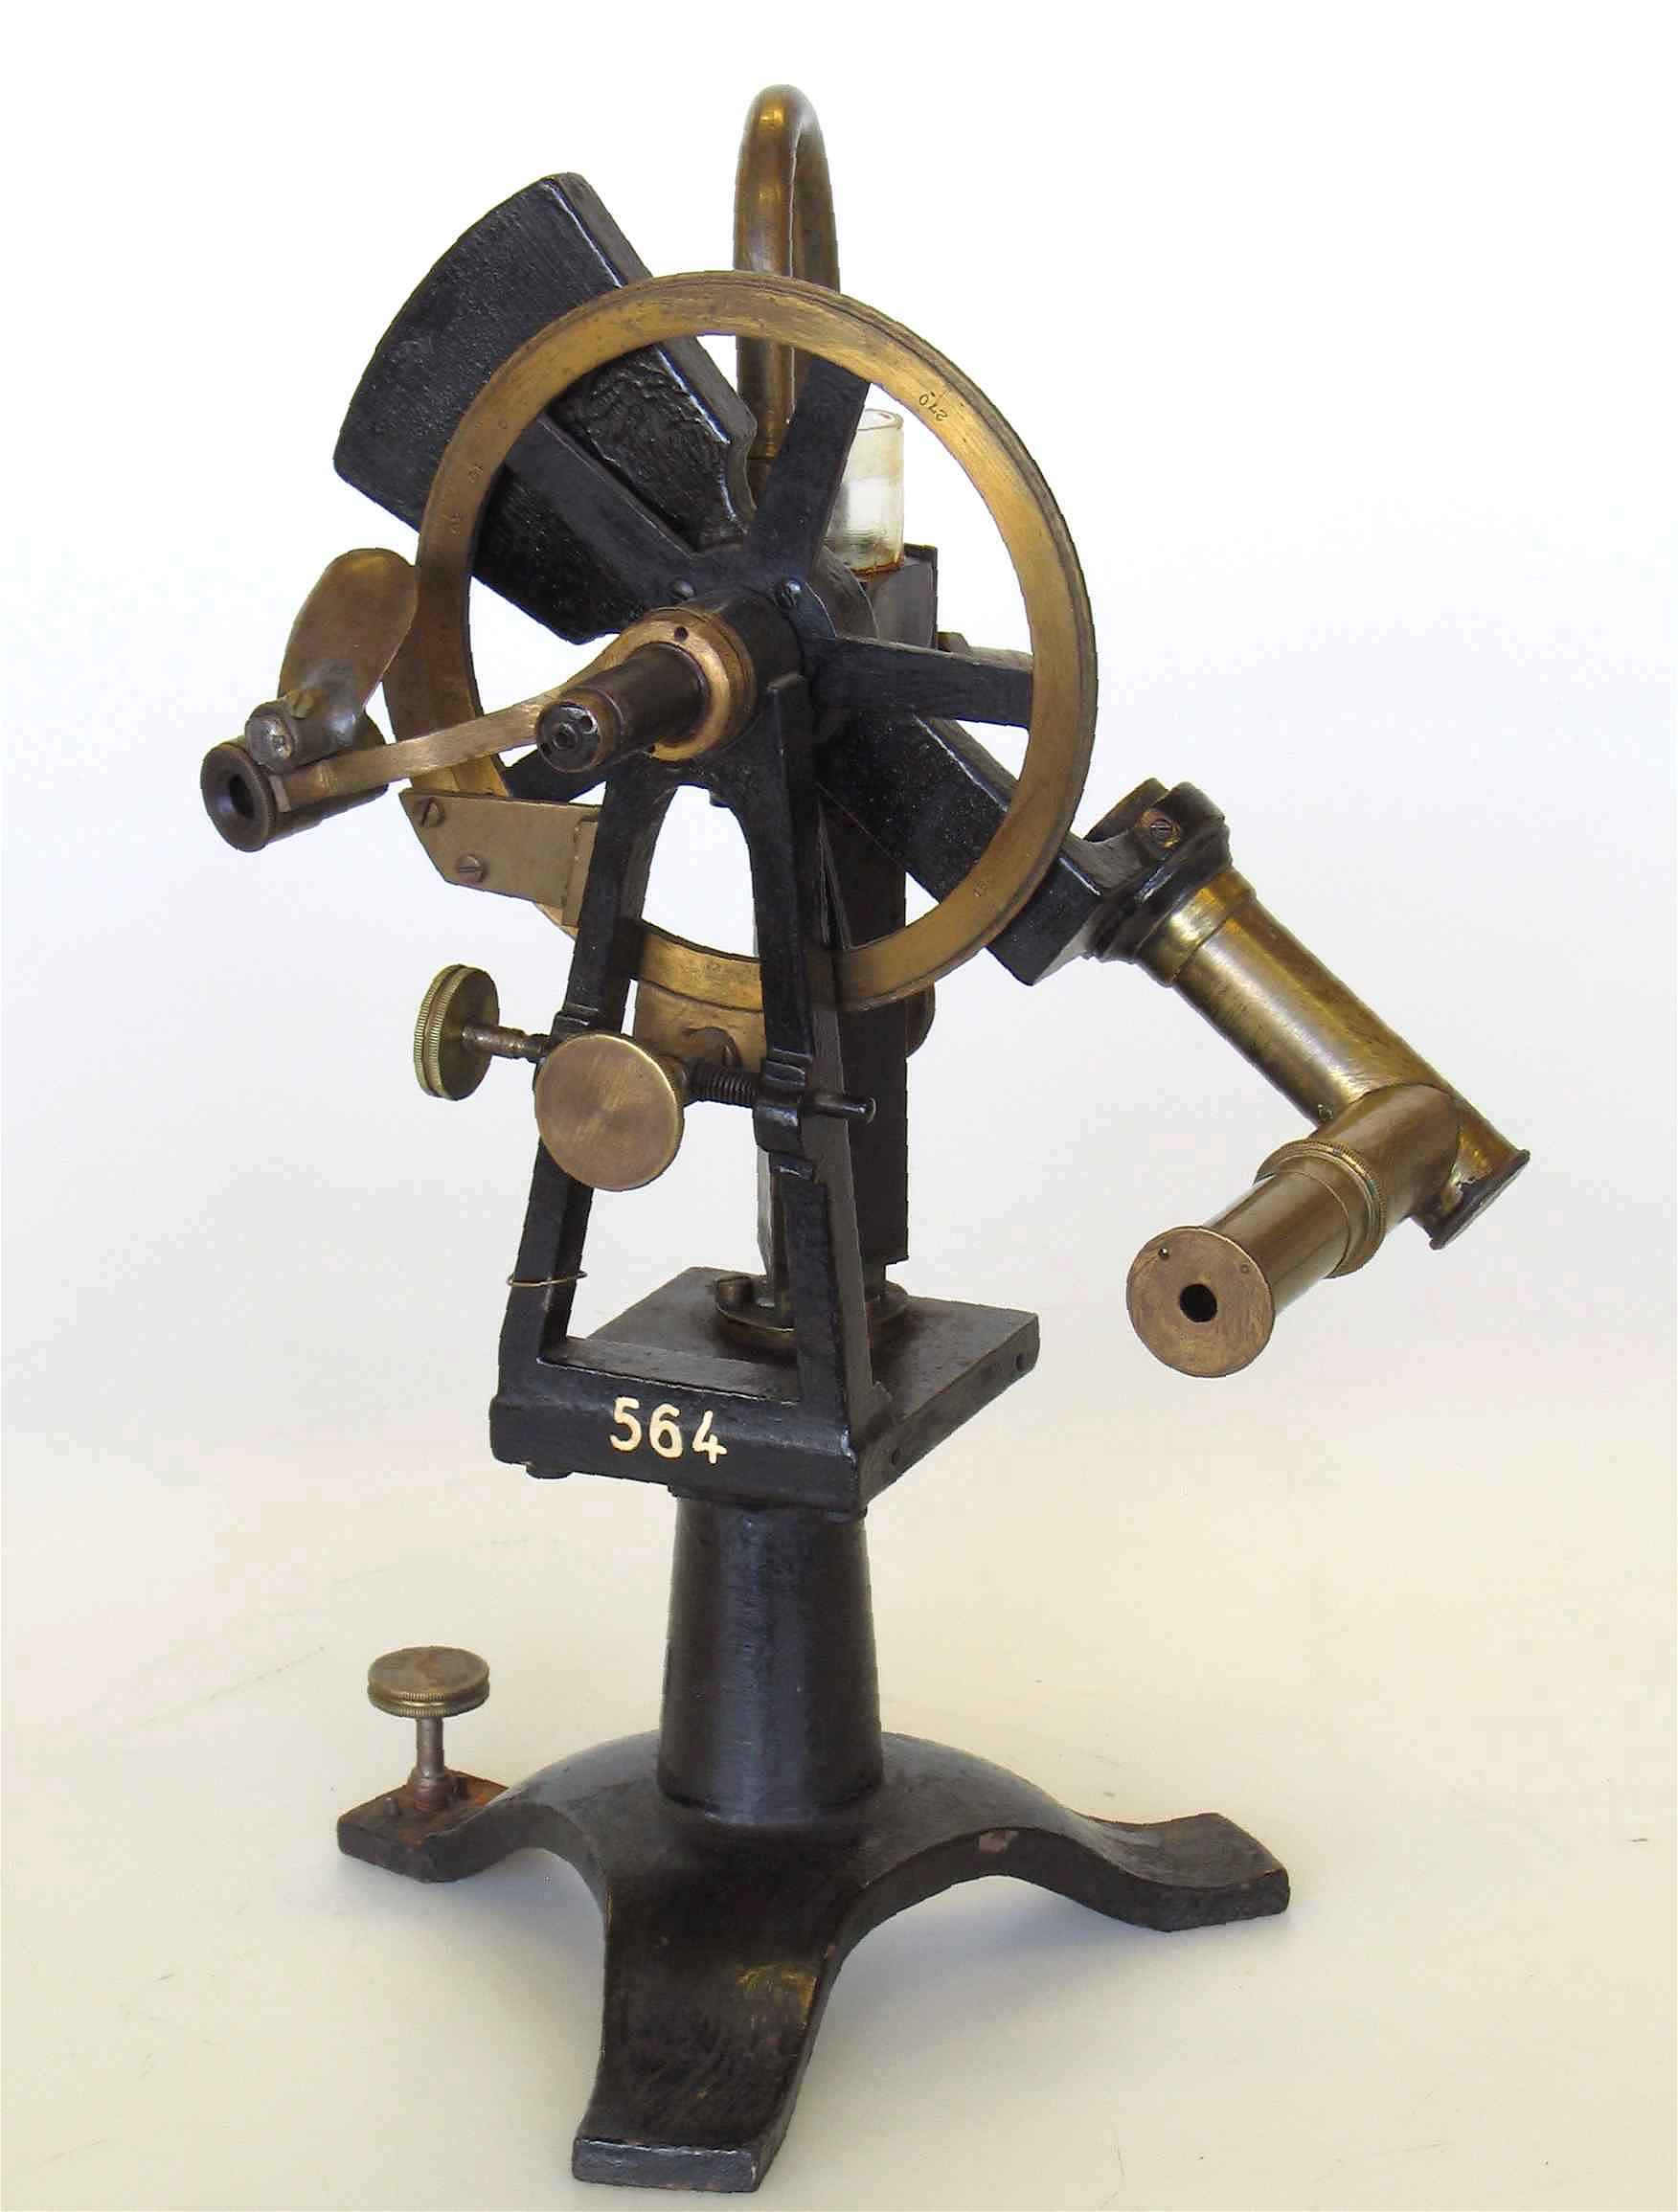 Réfractomètre de Pulfrich
(modèle original)